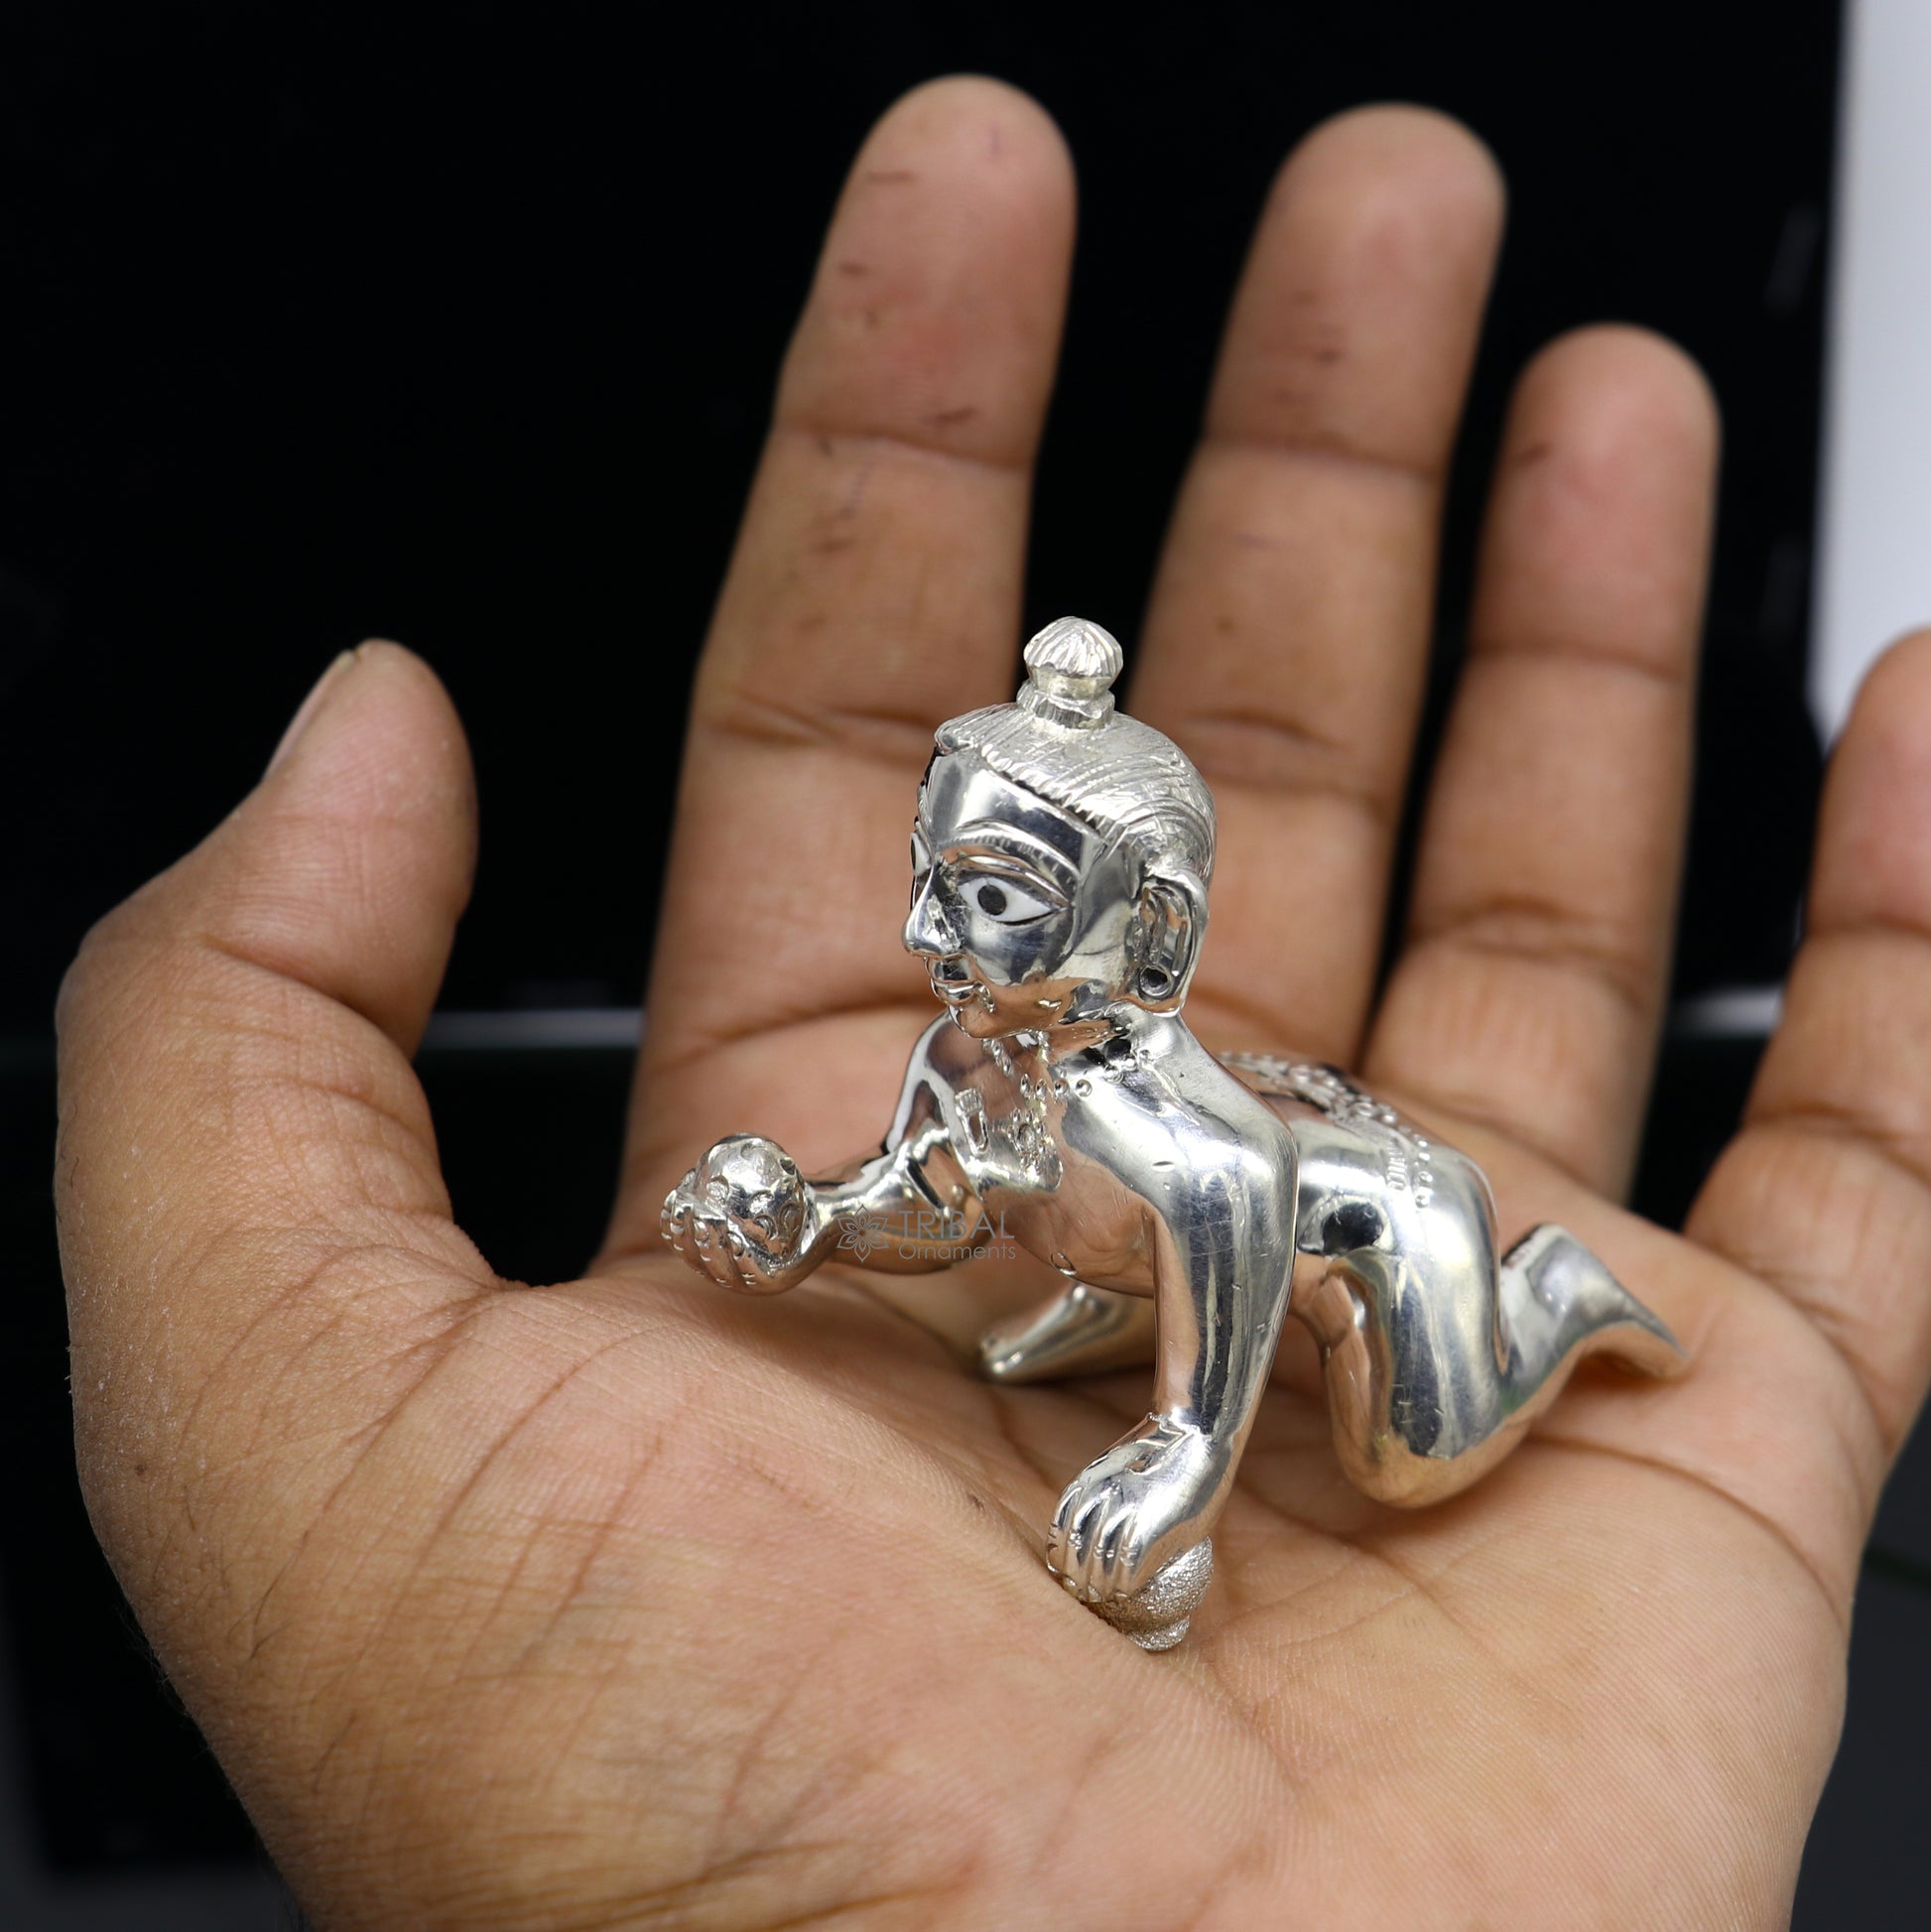 Divine 925 sterling Solid silver handmade idol Krishna, Ladu Gopal, crawling Krishna small statue sculpture home temple puja art art495 - TRIBAL ORNAMENTS